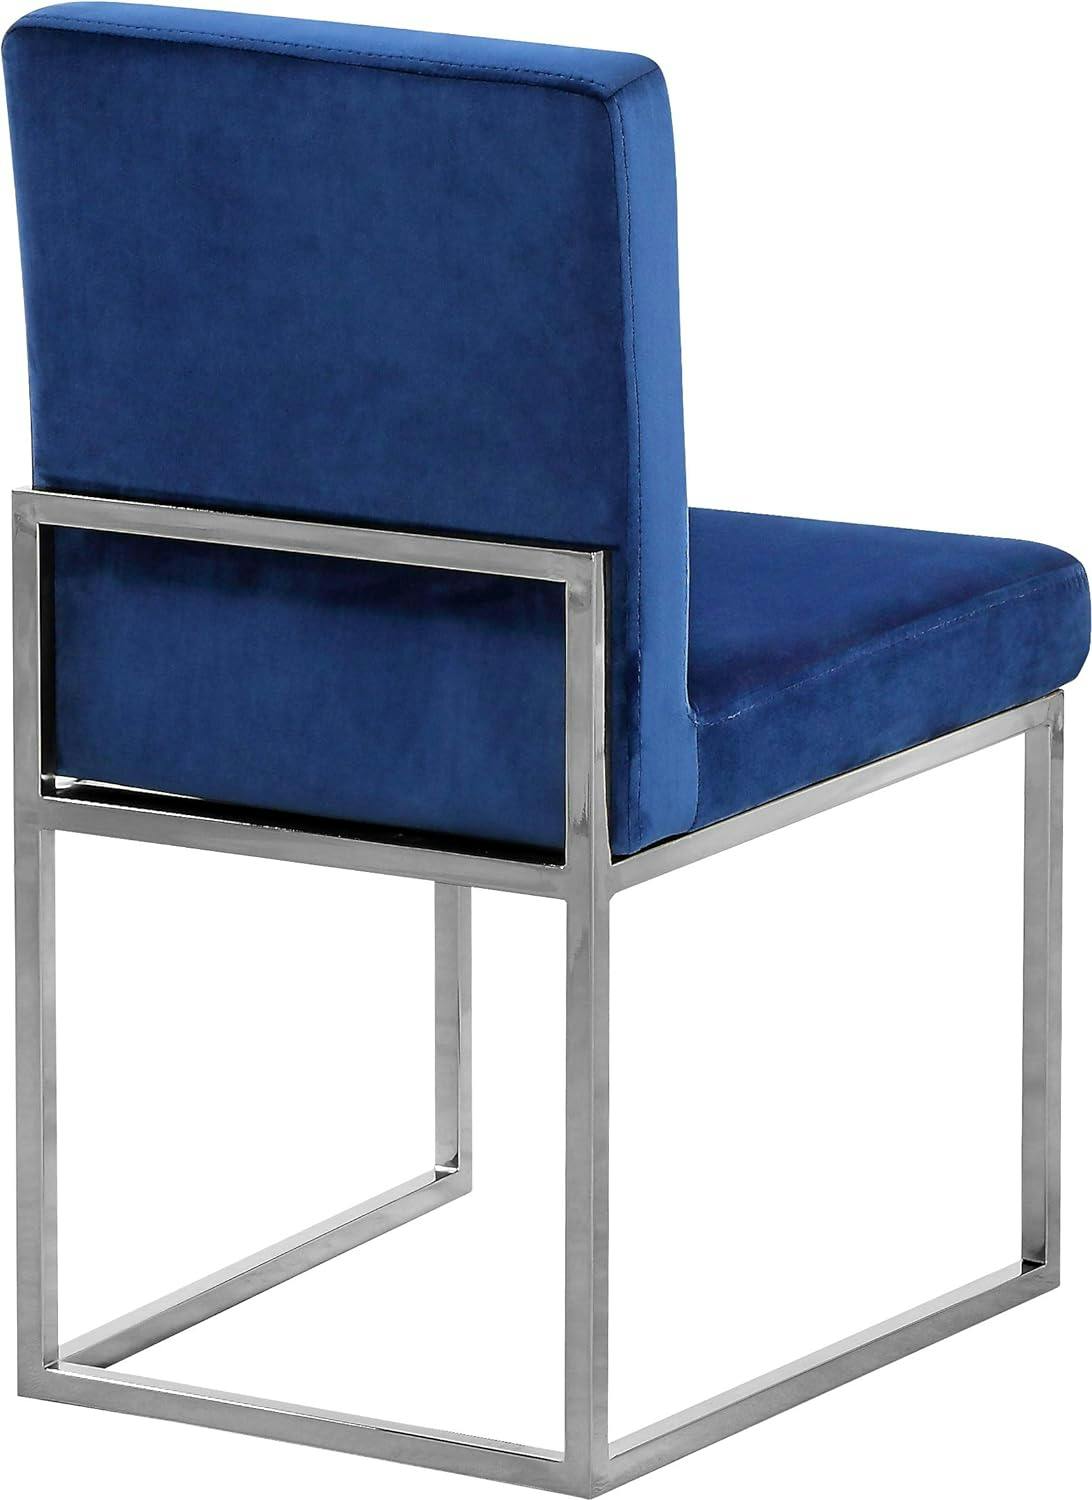 Elegant Navy Velvet Upholstered Side Chair with Chrome Base